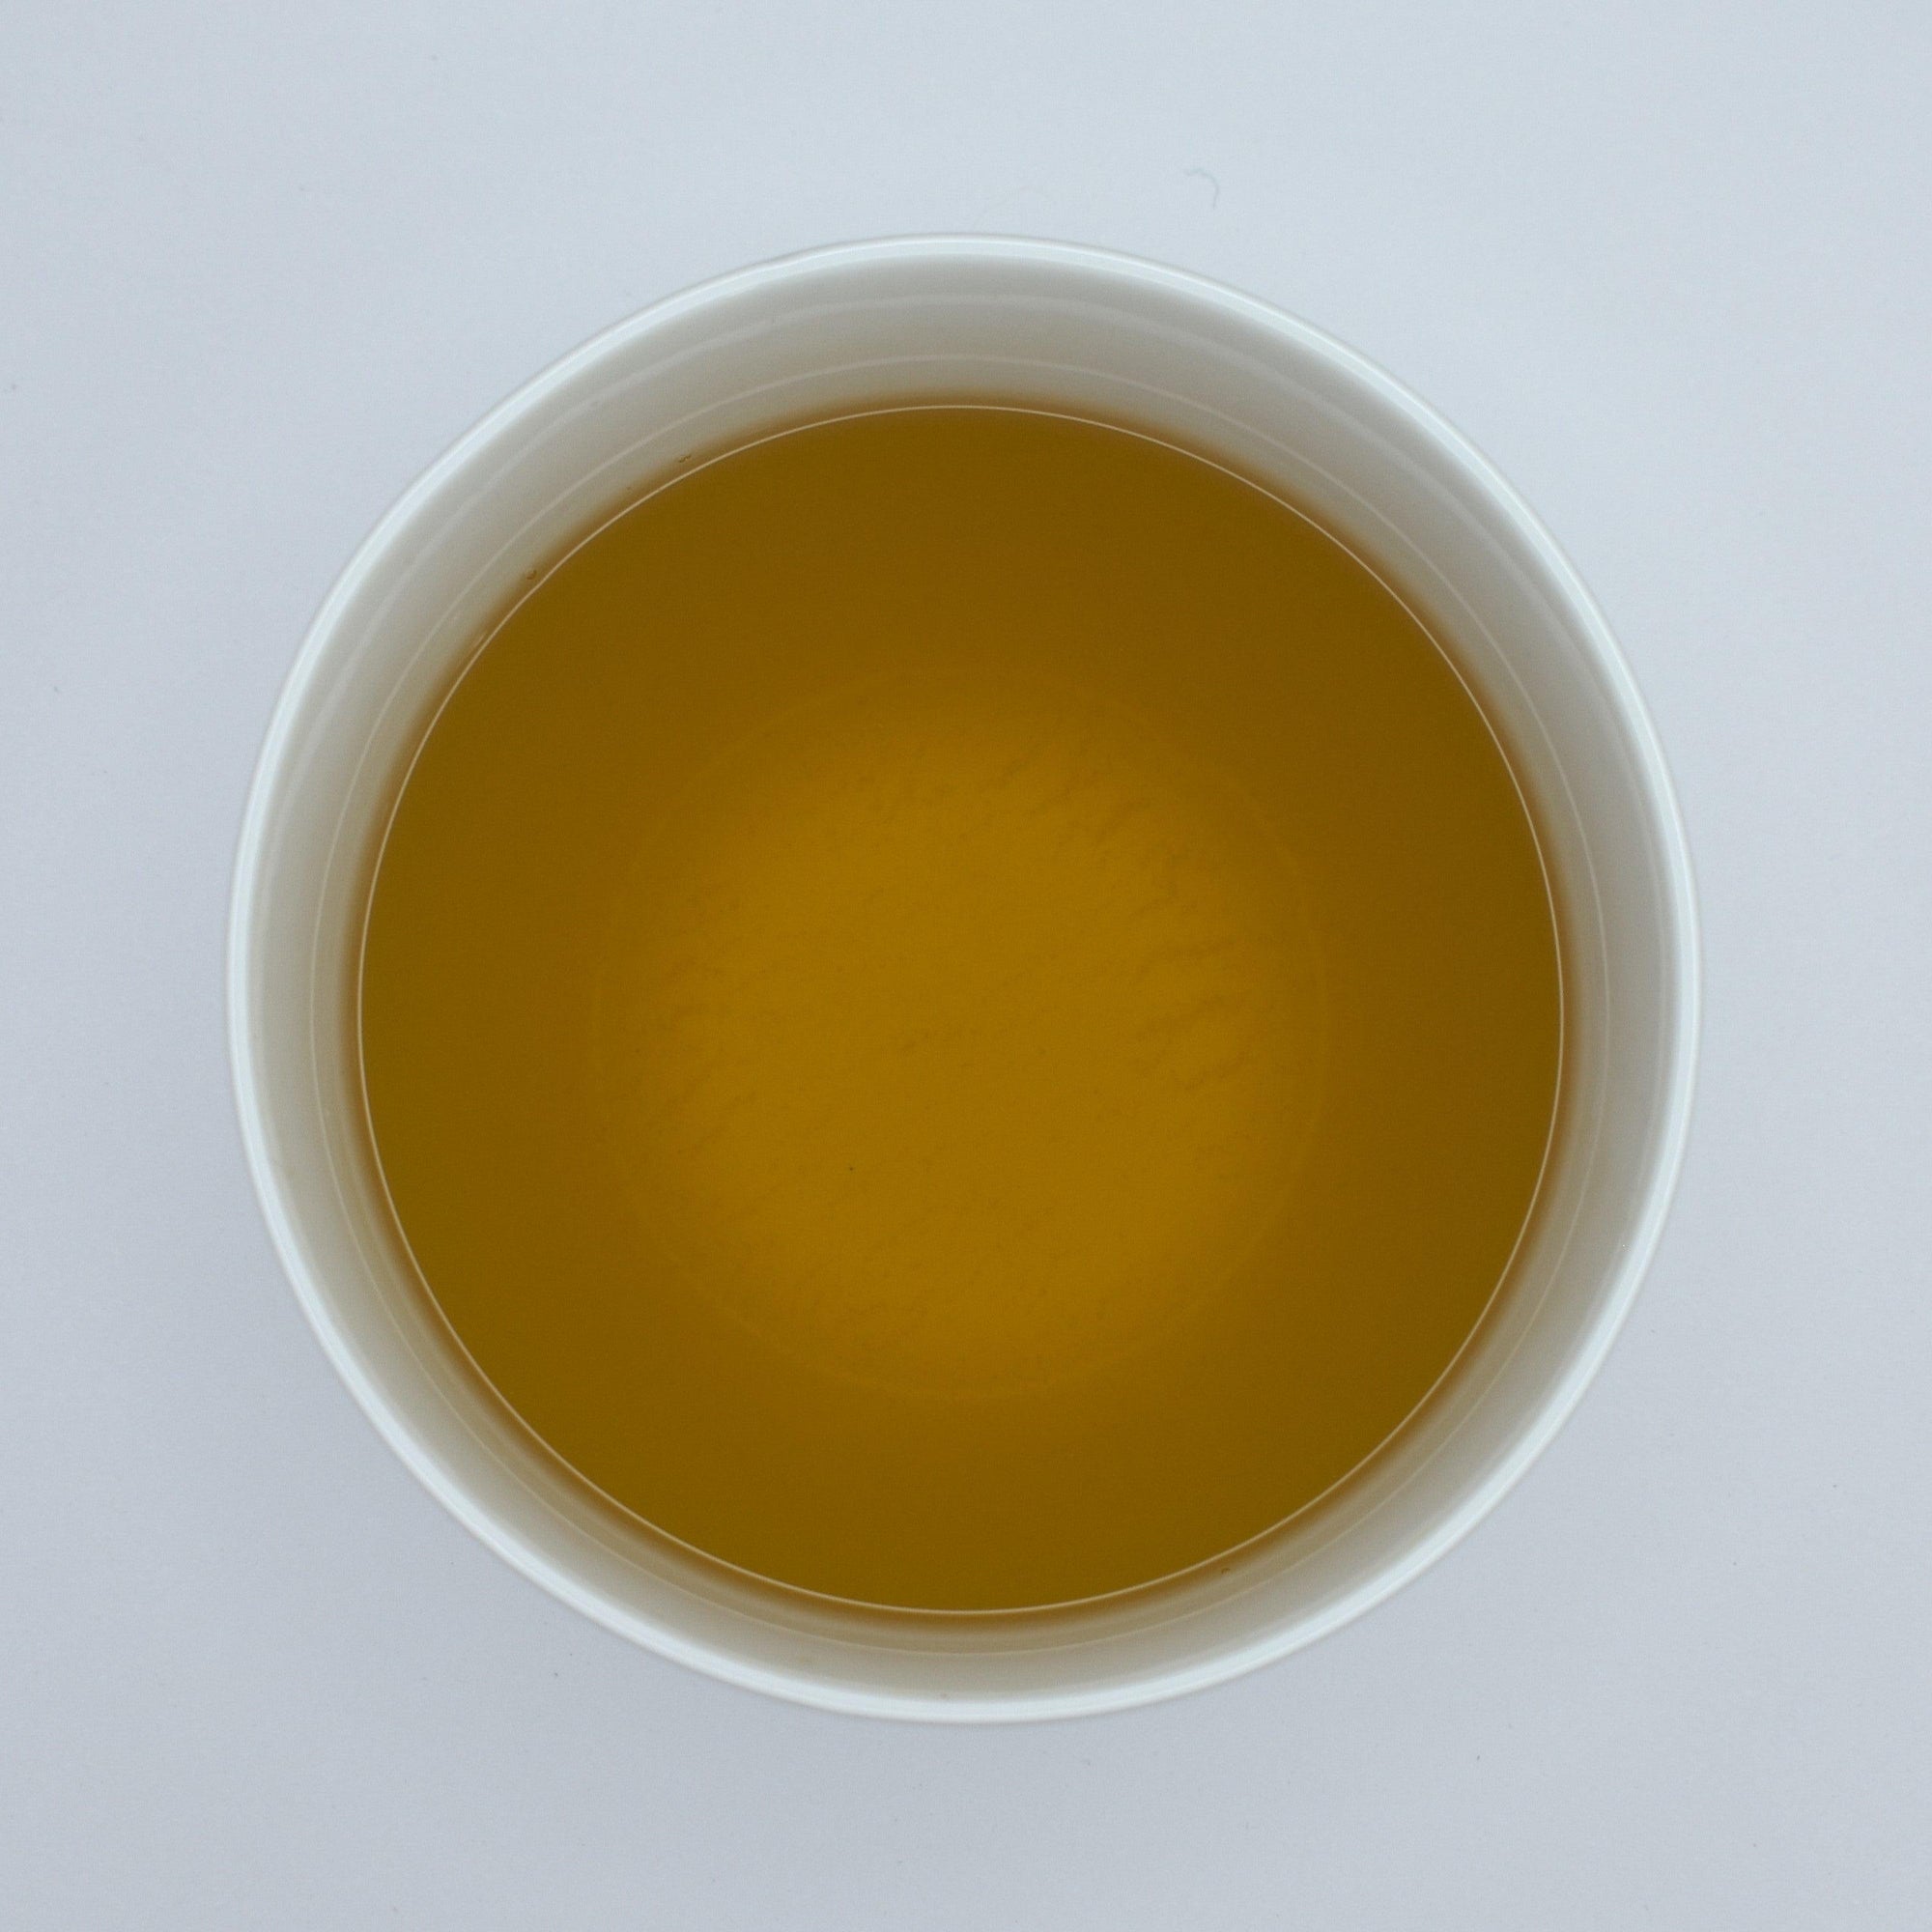 Almost Muma - Organic - The Tea & Spice Shoppe